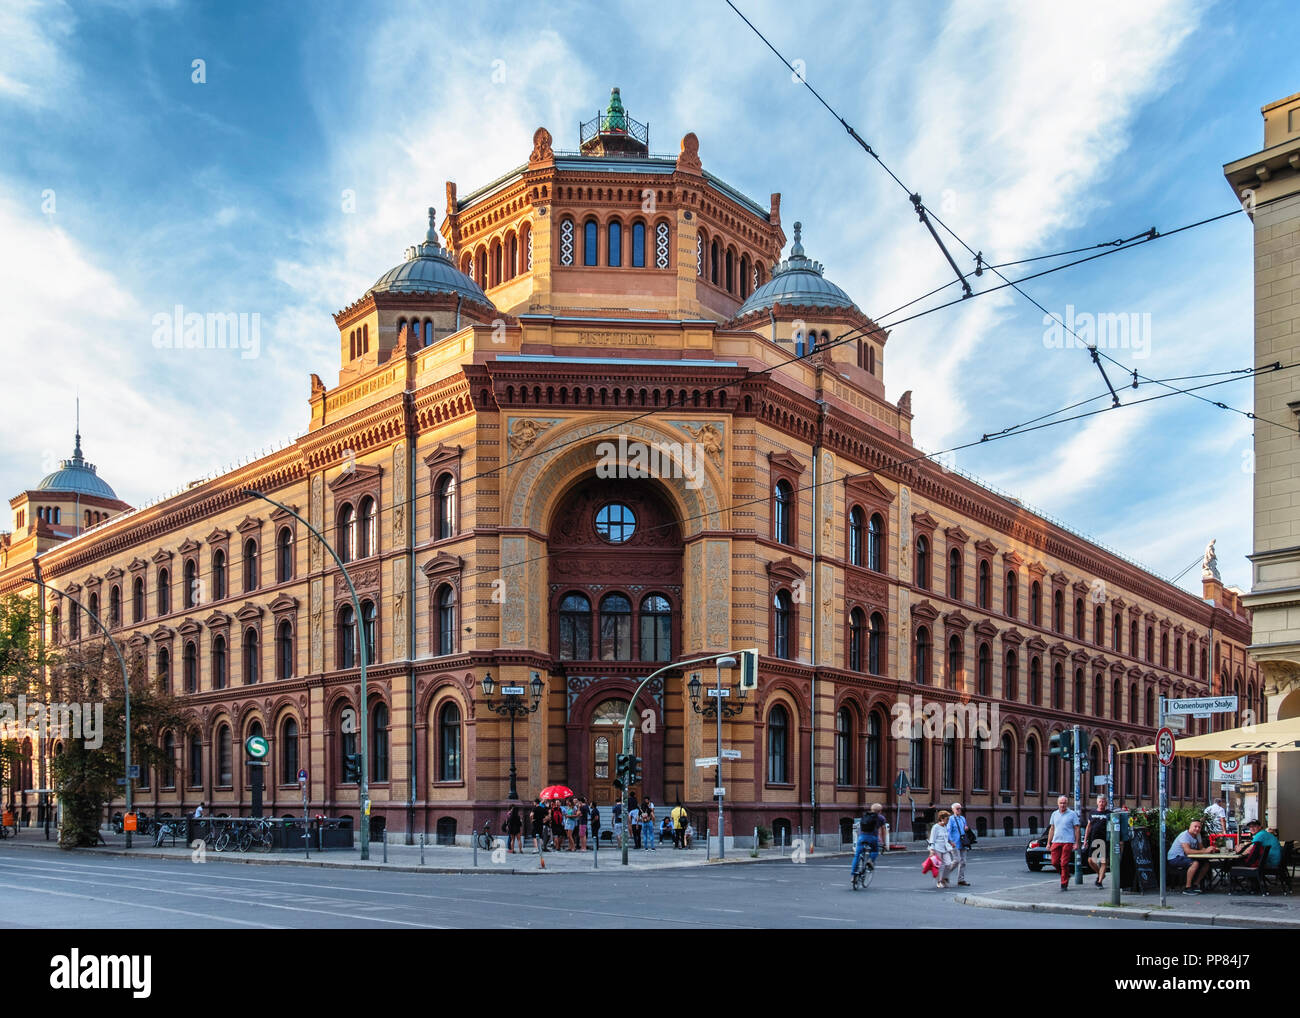 Berlin-Mitte. Elencate storico antico ufficio postale con esterno in mattoni, torre ottagonale,due cupole di verde e di elementi decorativi ingresso ad arco Foto Stock